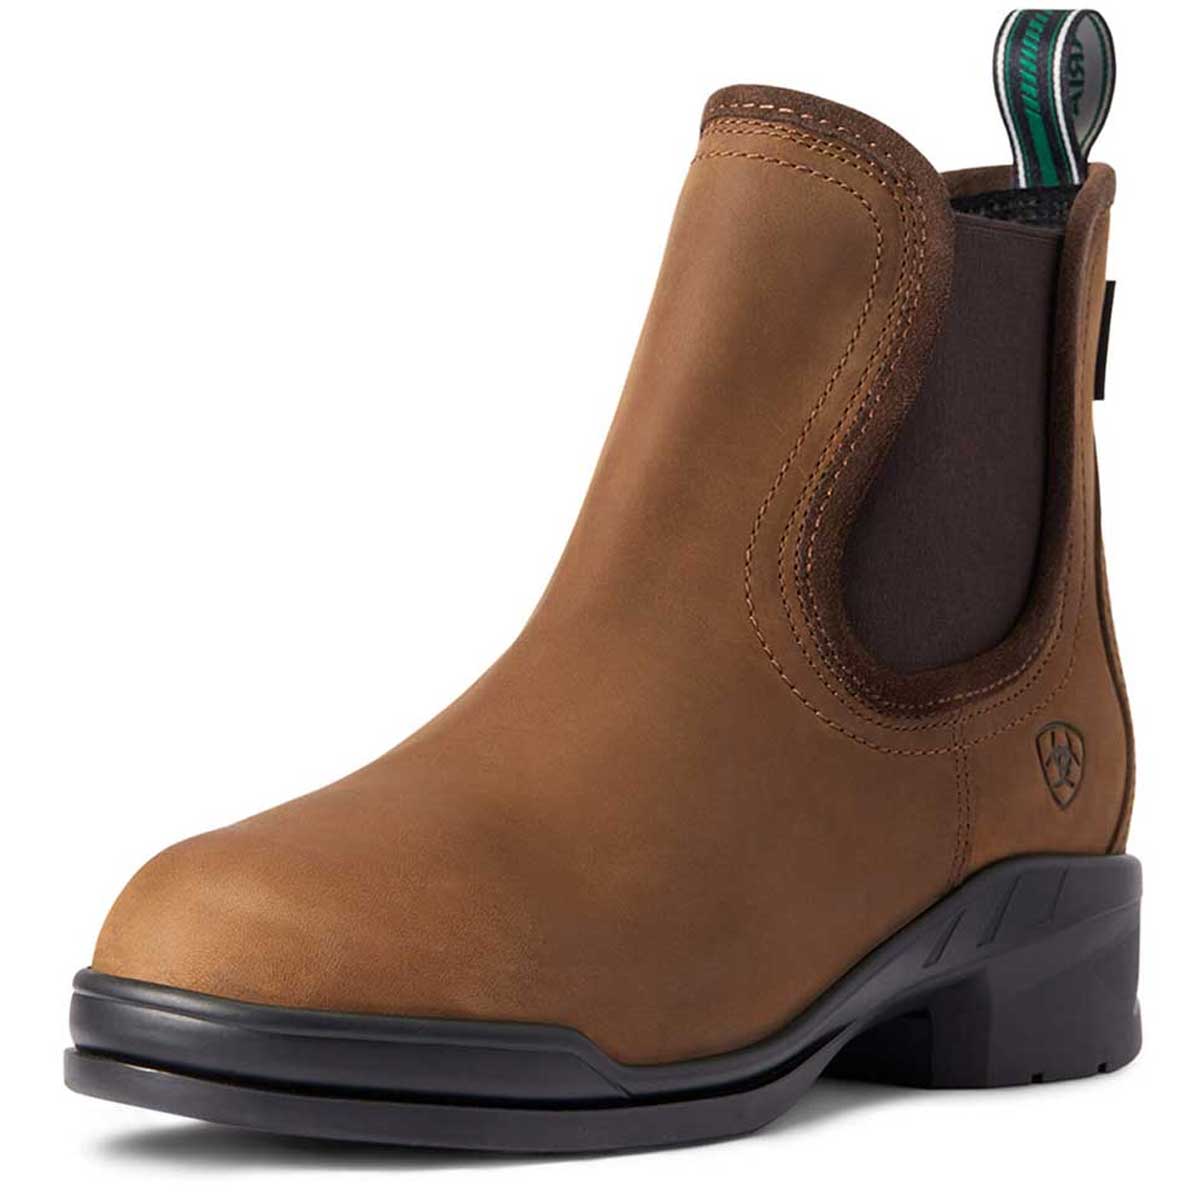 ARIAT Keswick Paddock Boots - Womens Steel Toe - Distressed Brown